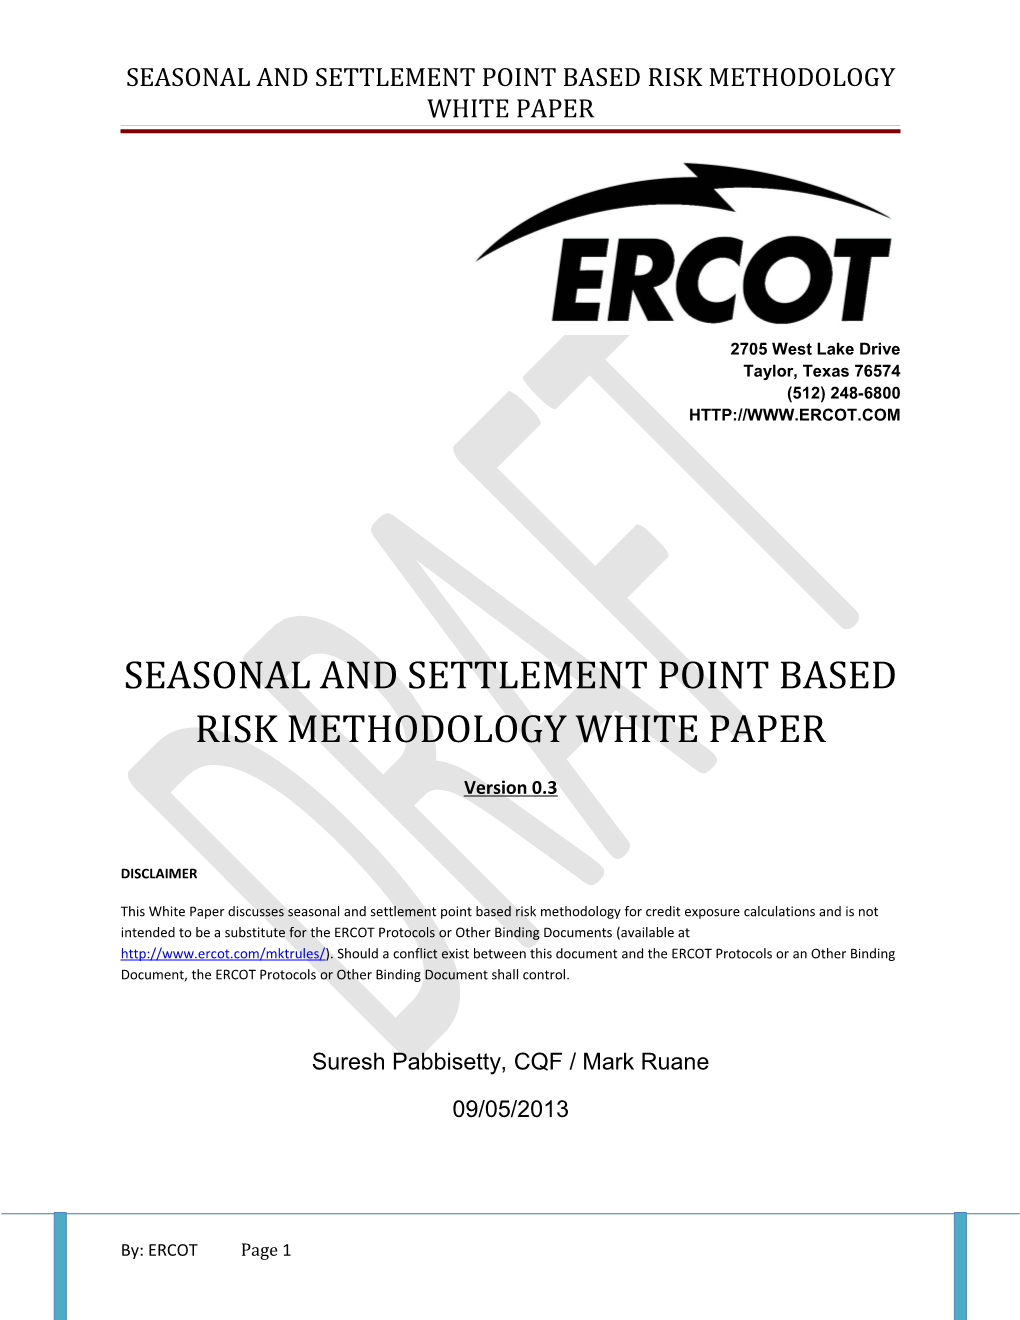 Seasonal and Settlement Point Based Risk Methodology White Paper